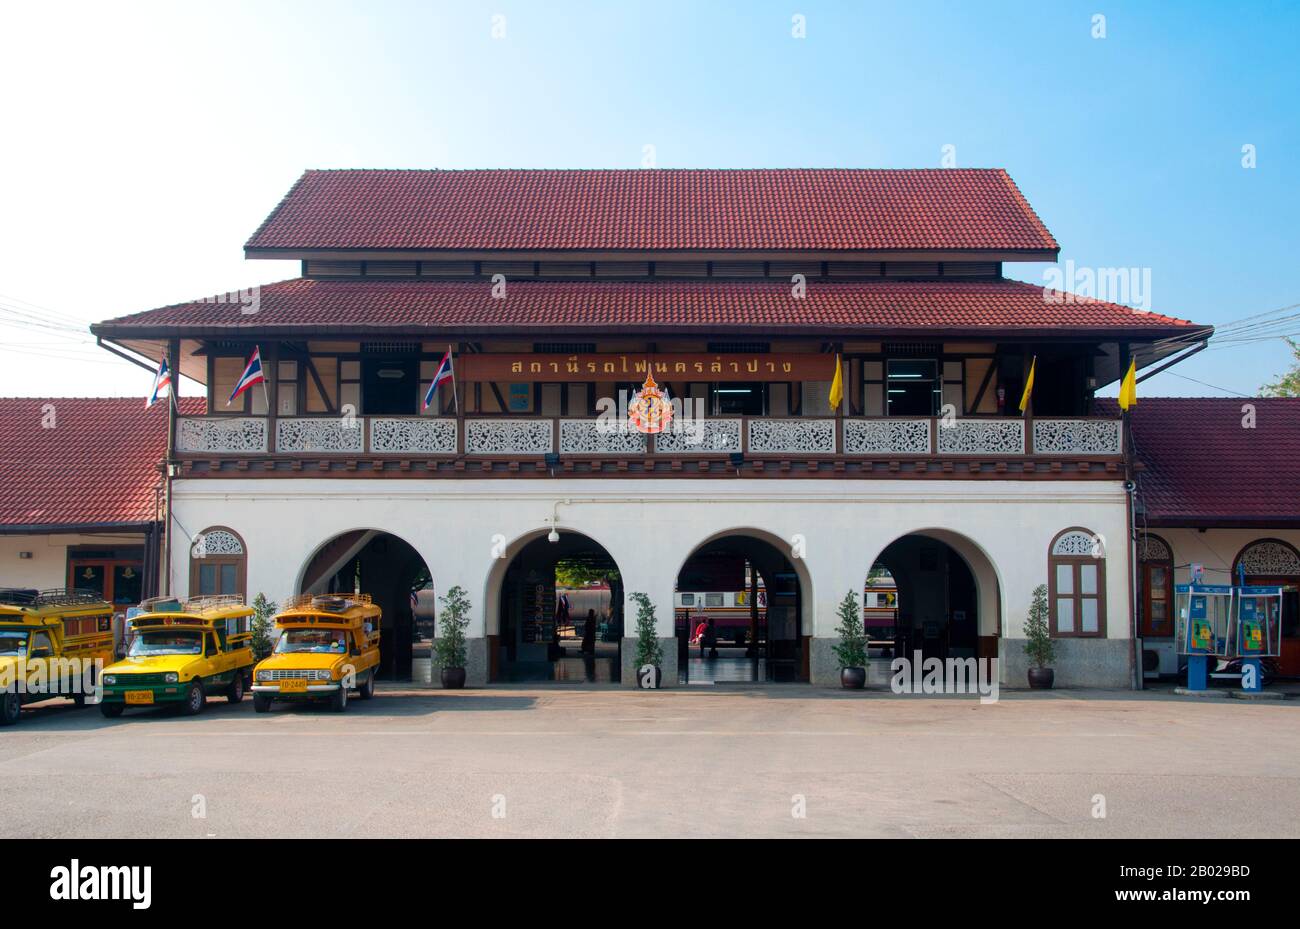 Der Bahnhof Nakhon Lampang wurde während der Regierungszeit von König Vajiravudh (Rama VI.) am 1. April des Jahres 1916 eröffnet. Ursprünglich wurde hier die nördliche Bahnverbindung aus Bangkok beendet. Bis 1921 wurde nördlich von Lampang der Khun Tan-Tunnel gegraben und die Eisenbahnlinie durch die Berge bis nach Chiang Mai verlängert. Lampang wurde ursprünglich während der Dvaravati-Zeit des 7. Jahrhunderts gegründet. Nichts bleibt aus dieser frühen Zeit, aber die Stadt ist reich an Tempeln, von denen viele einen deutlich birmanischen Geschmack haben, da Lampang im 19. Jahrhundert eine beträchtliche birmanische Bevölkerung hatte, von denen die meisten an t beteiligt waren Stockfoto